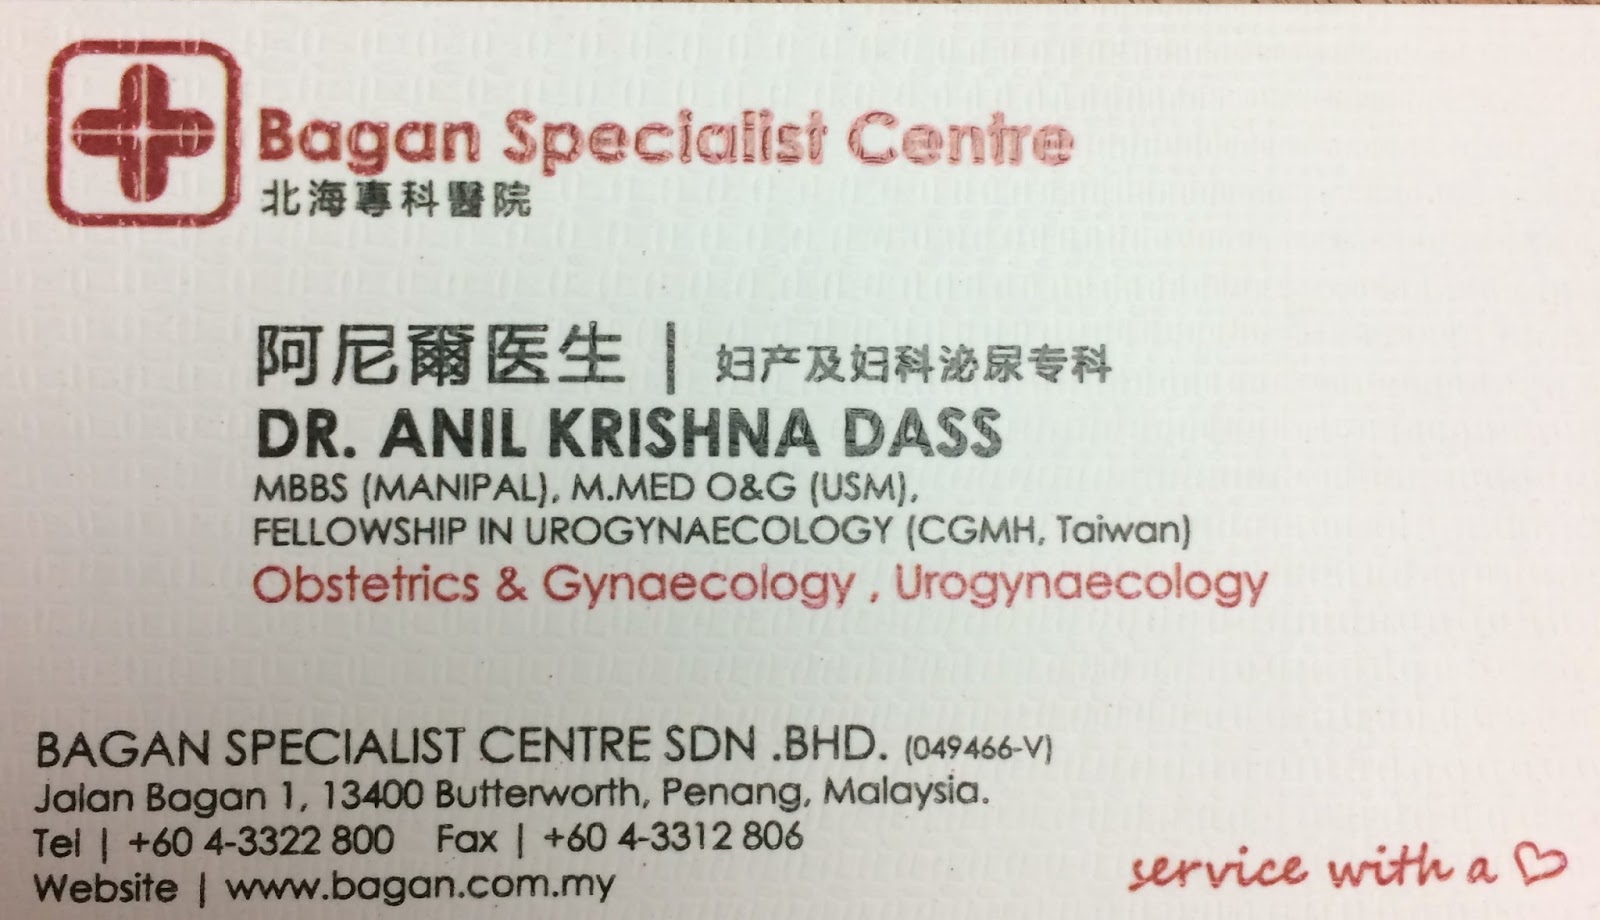 Bagan specialist